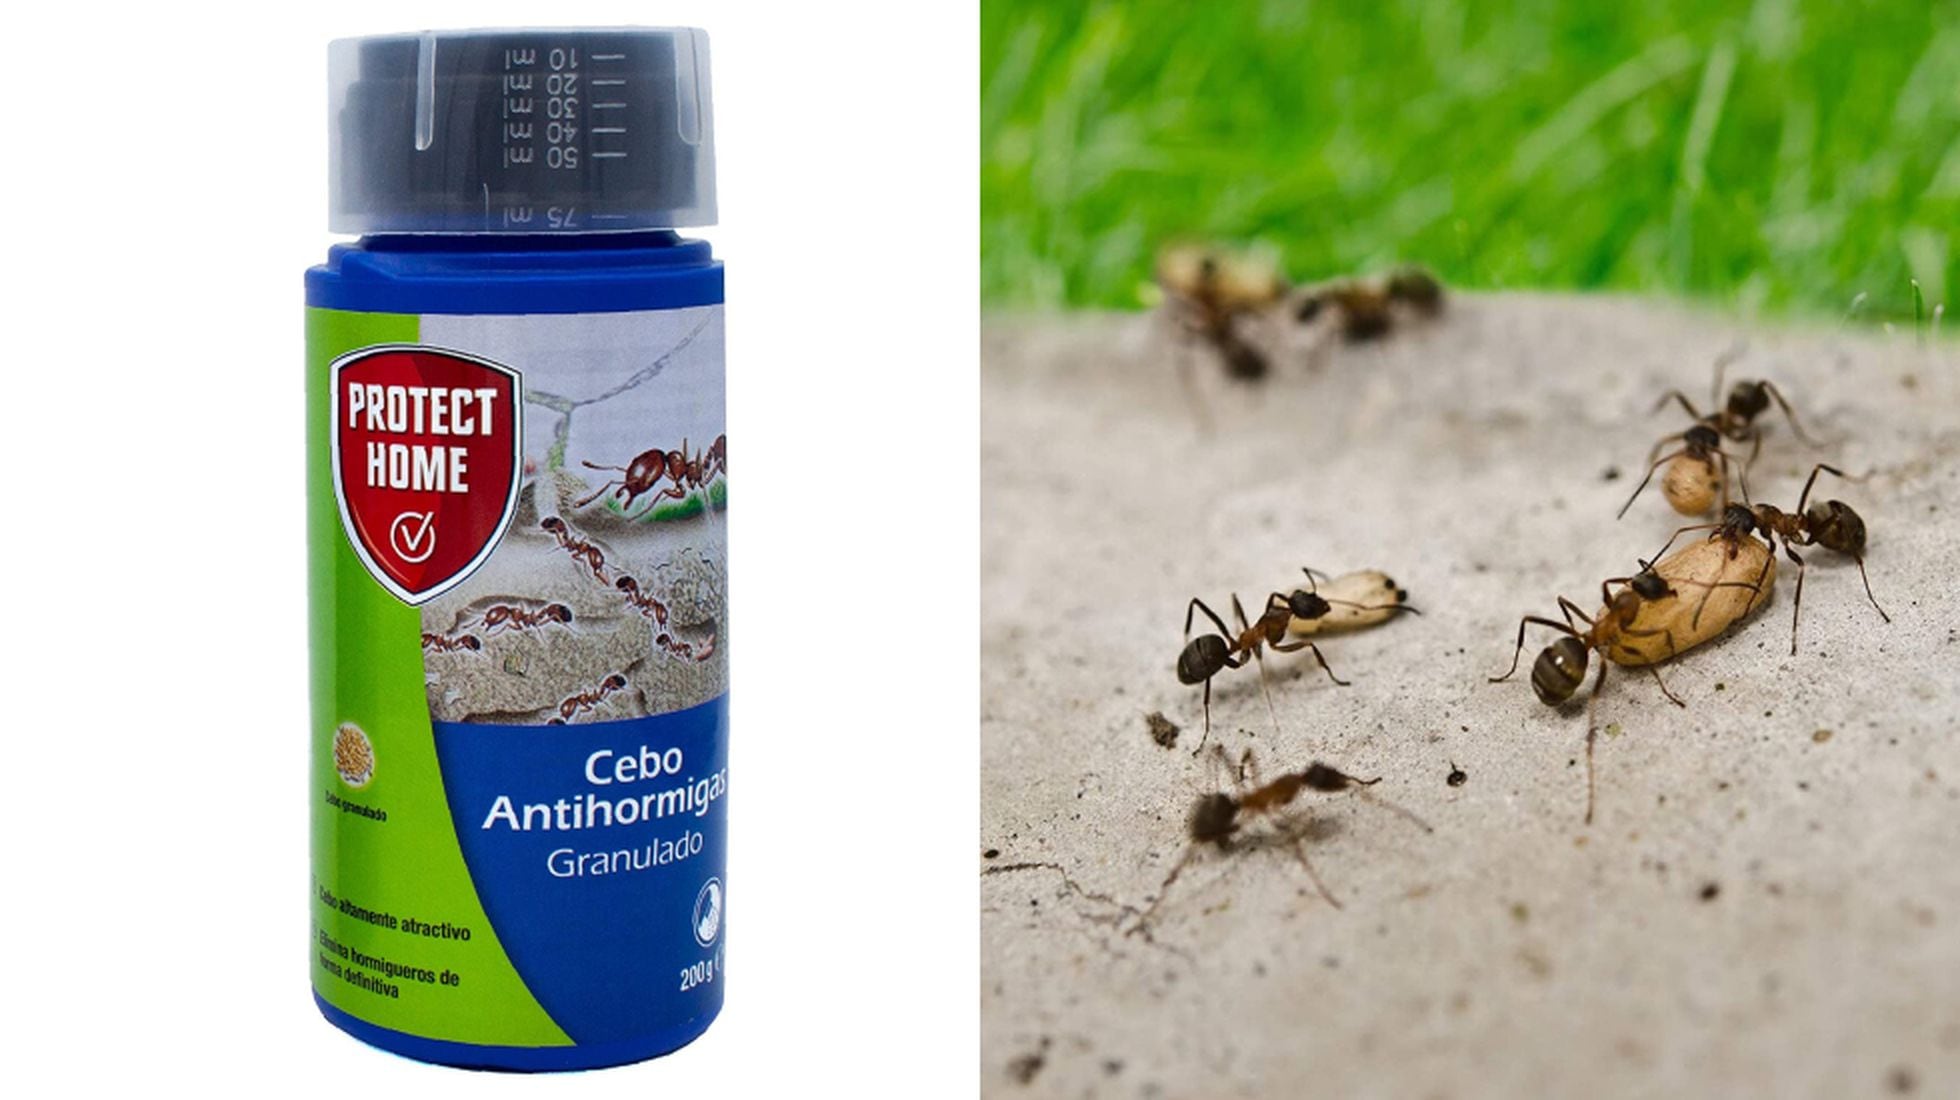 viceversa El aparato Borradura 12 insecticidas y repelentes baratos para acabar con las hormigas en casa  durante el verano | Escaparate: compras y ofertas | EL PAÍS